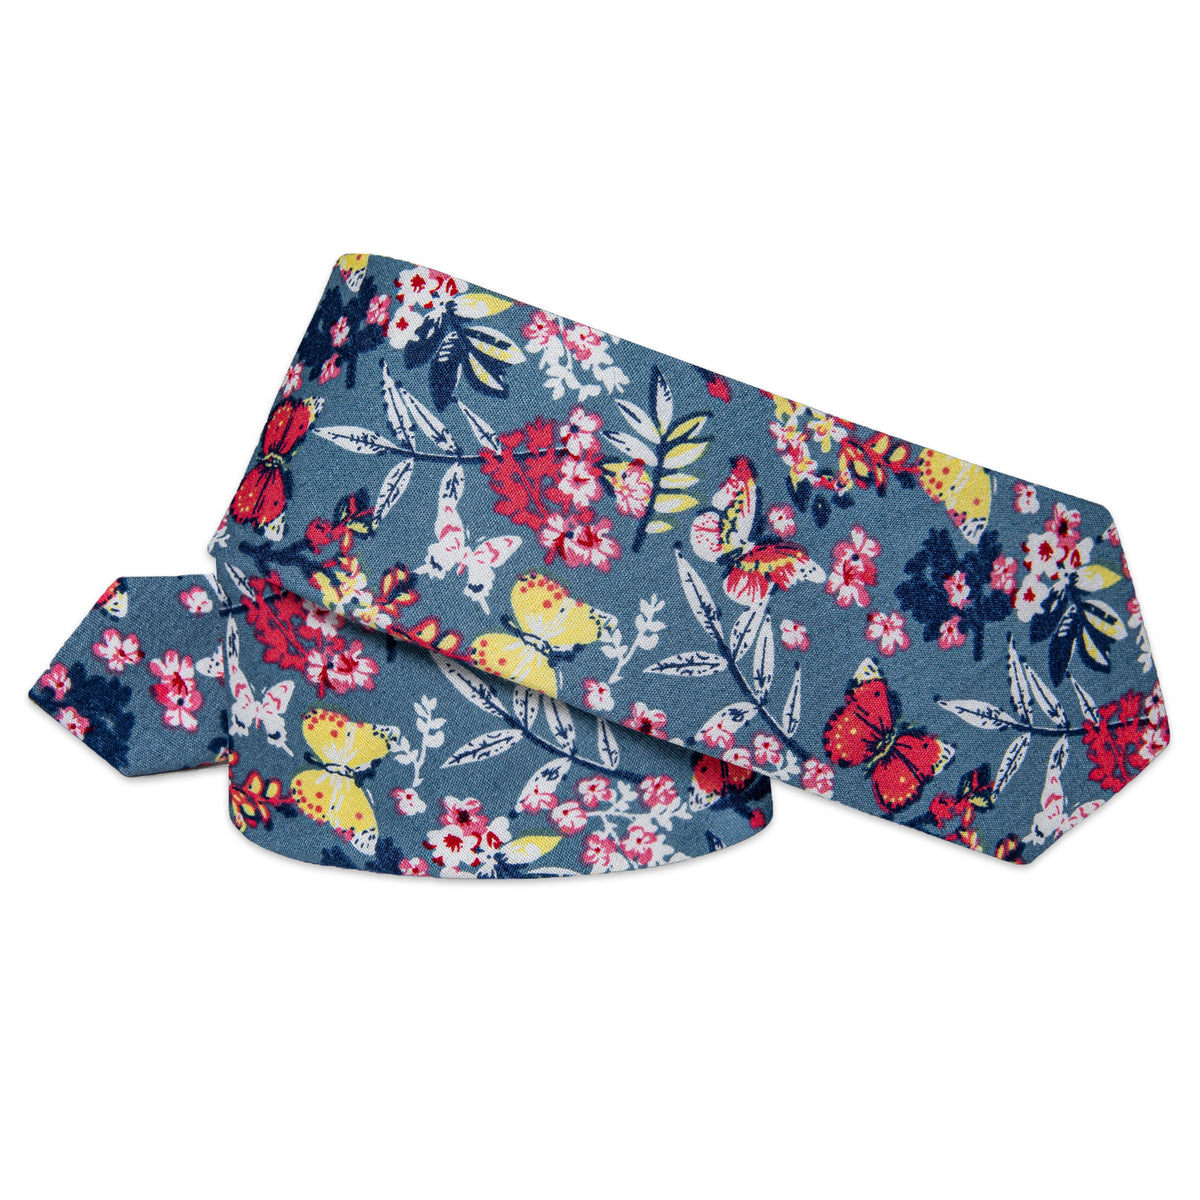 Blue Floral Printed Skinny Tie Set with Tie Clip